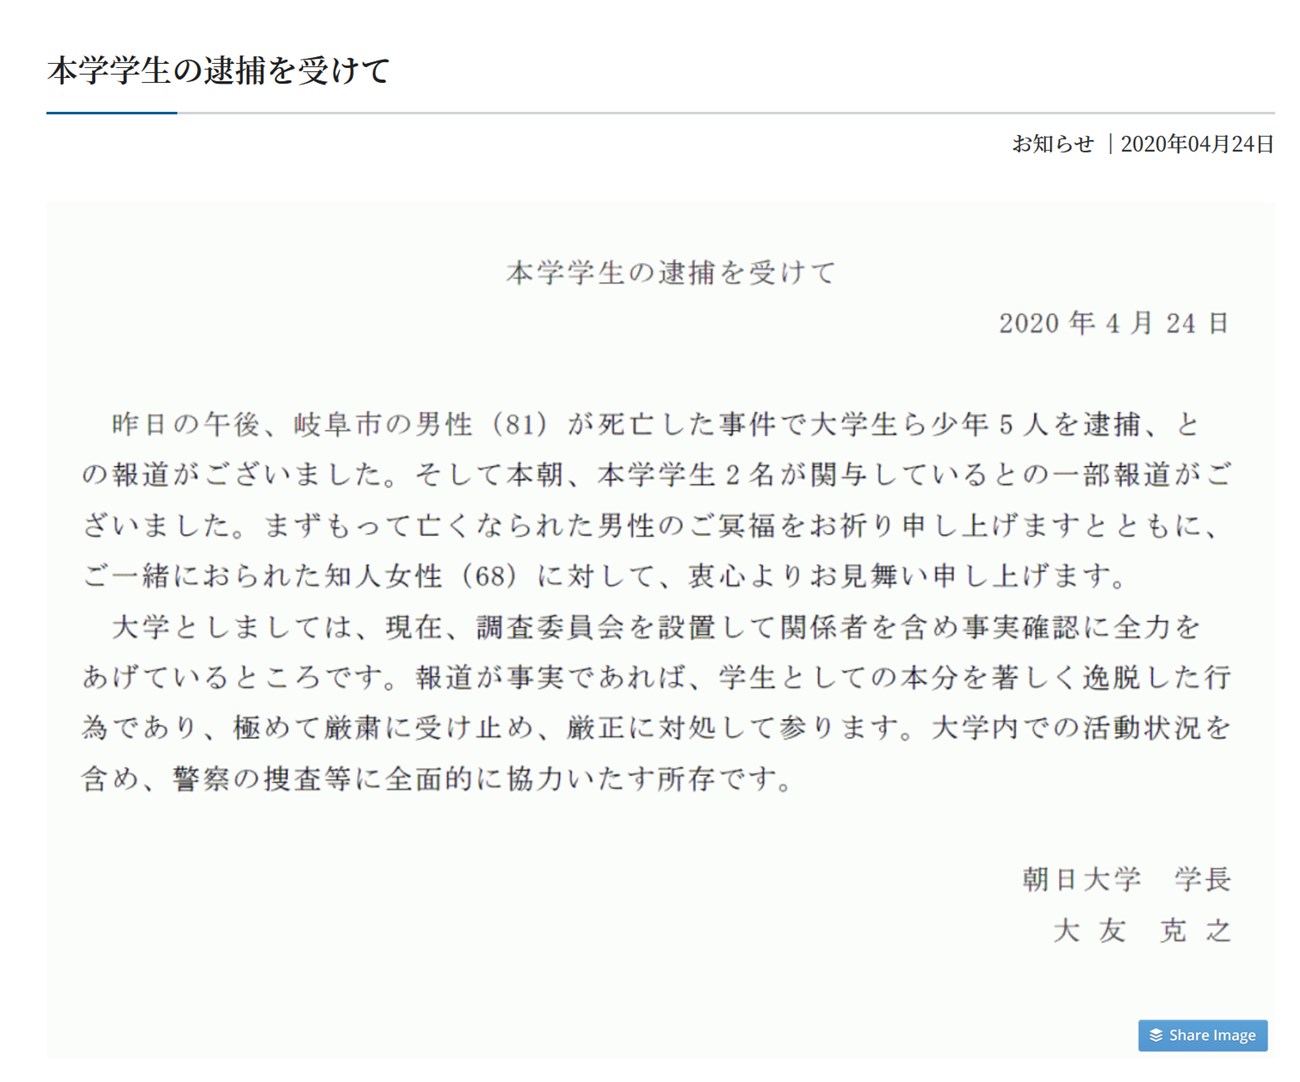 朝日大学のHPに掲載された学生逮捕に関する画像化された声明文章